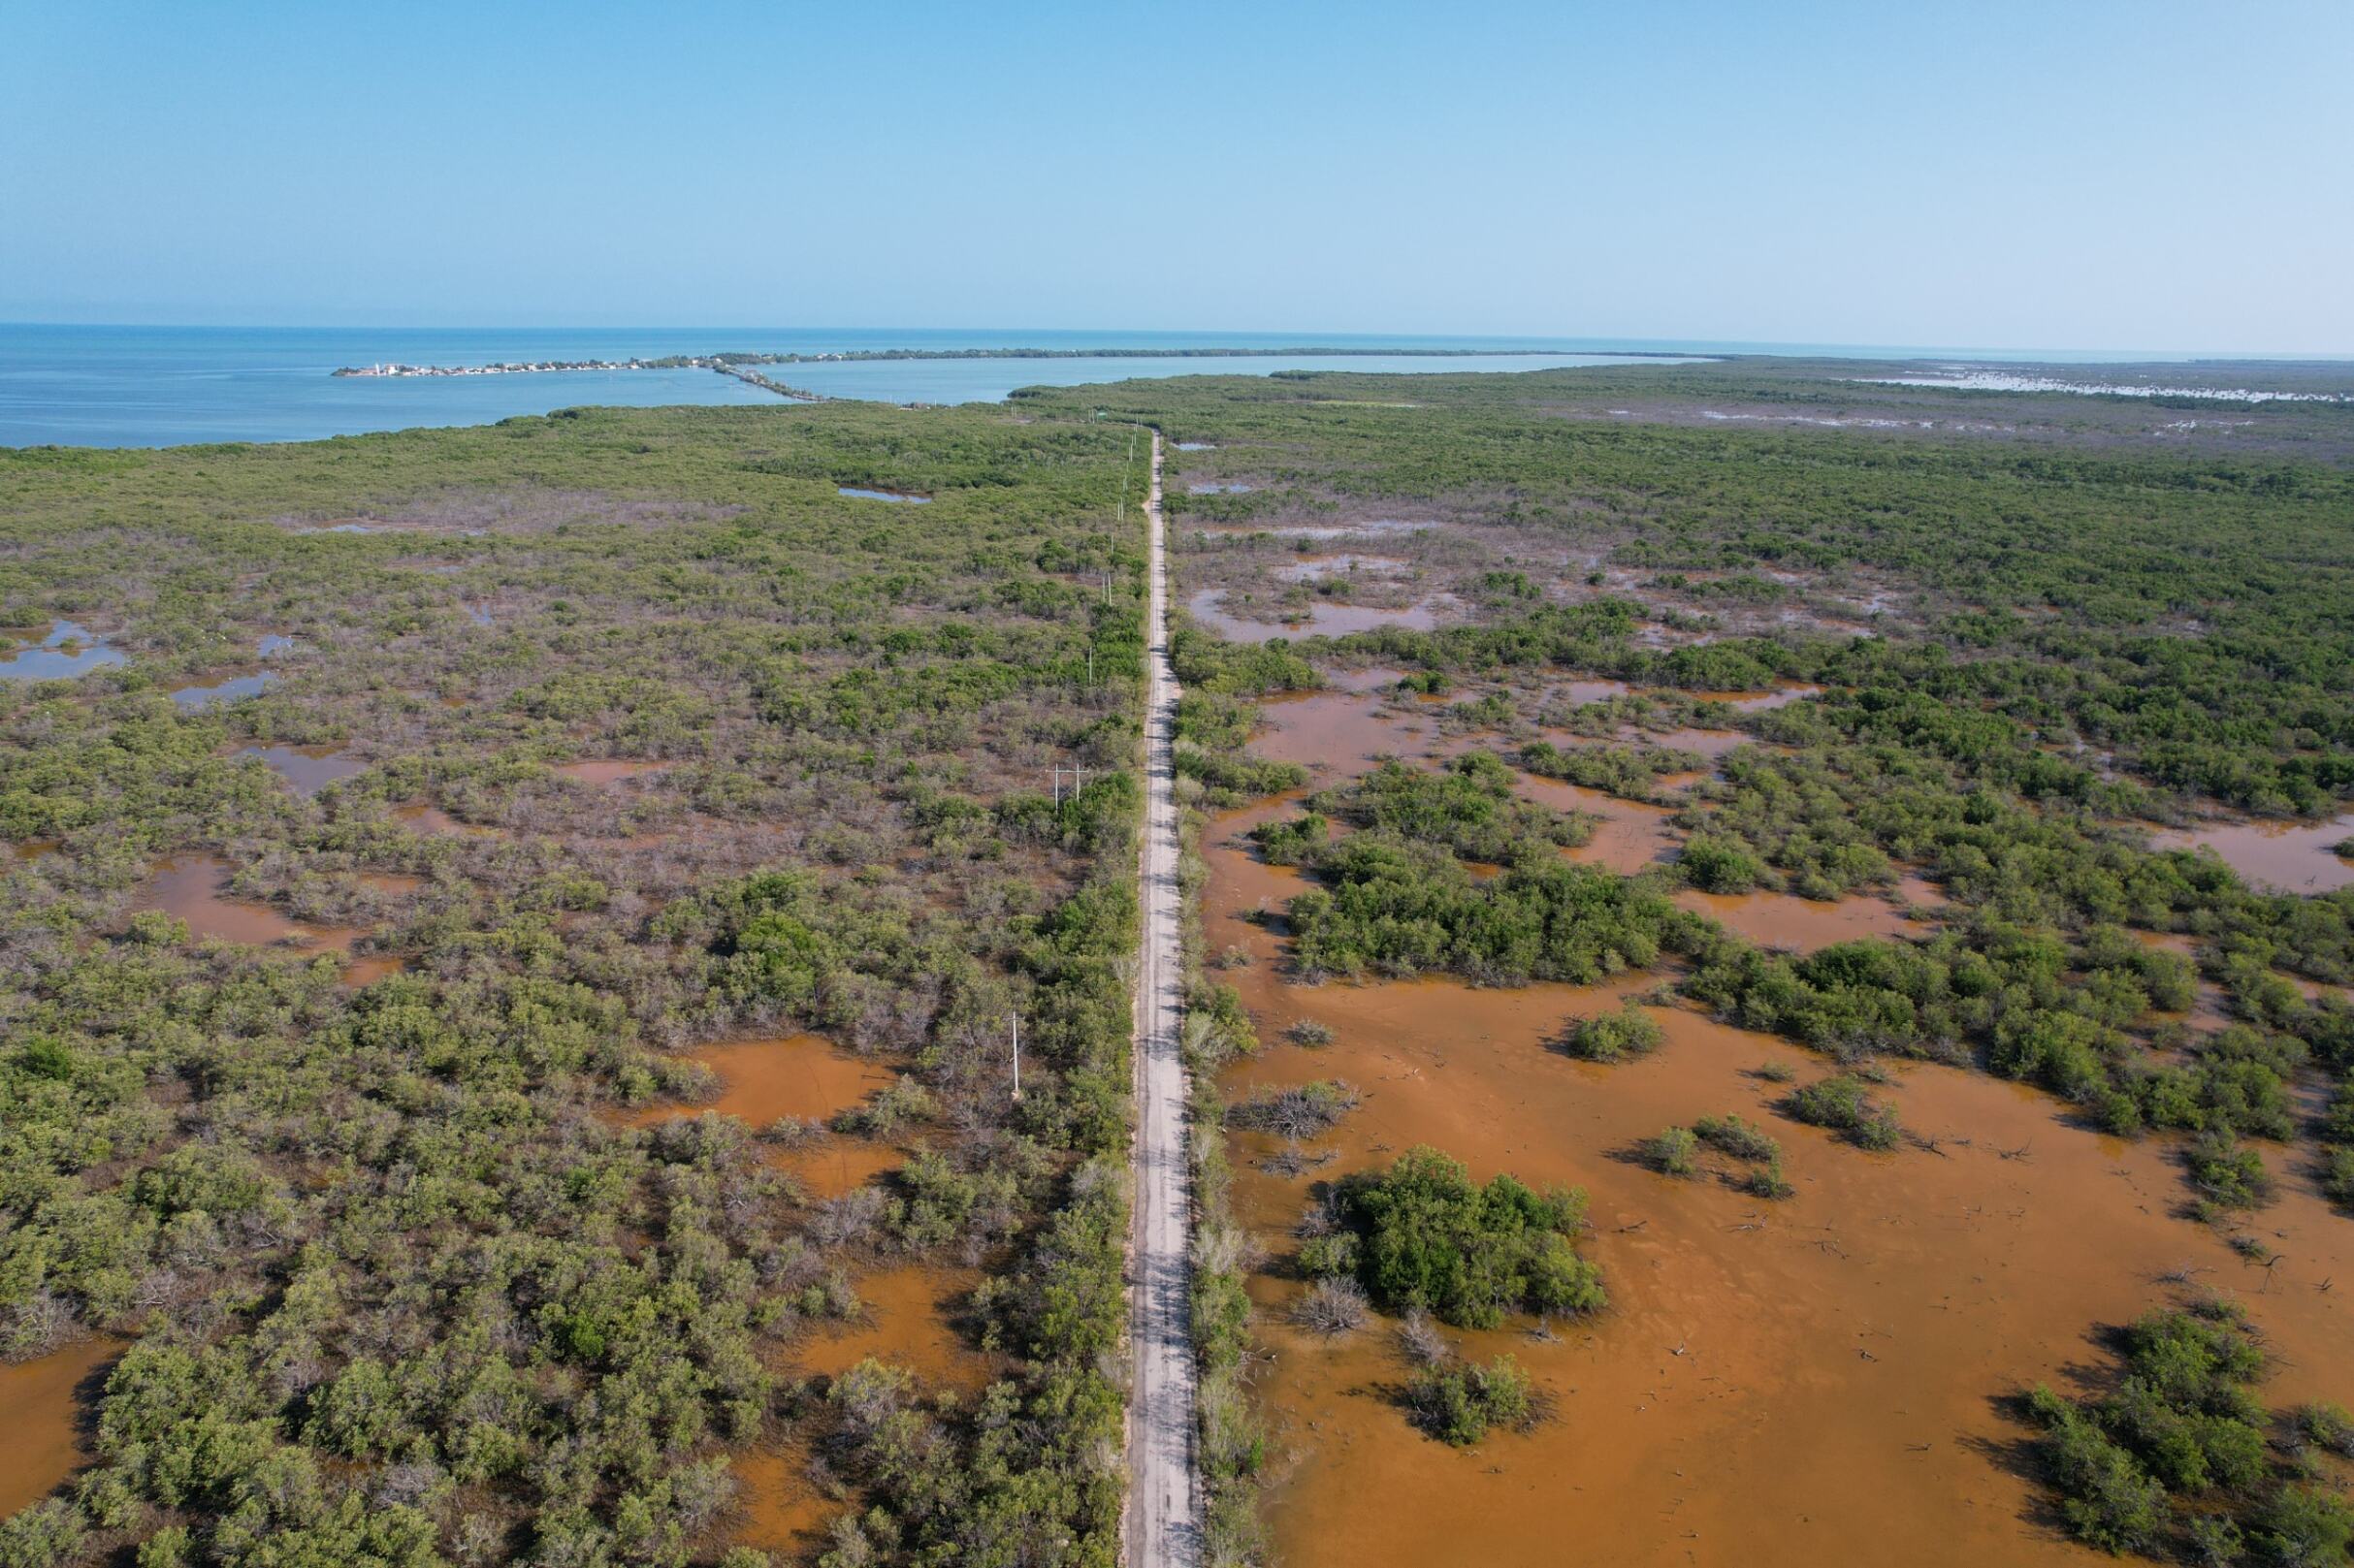 isla arena, un proyecto de restauración de manglares en la reserva de la biósfera ría celestún